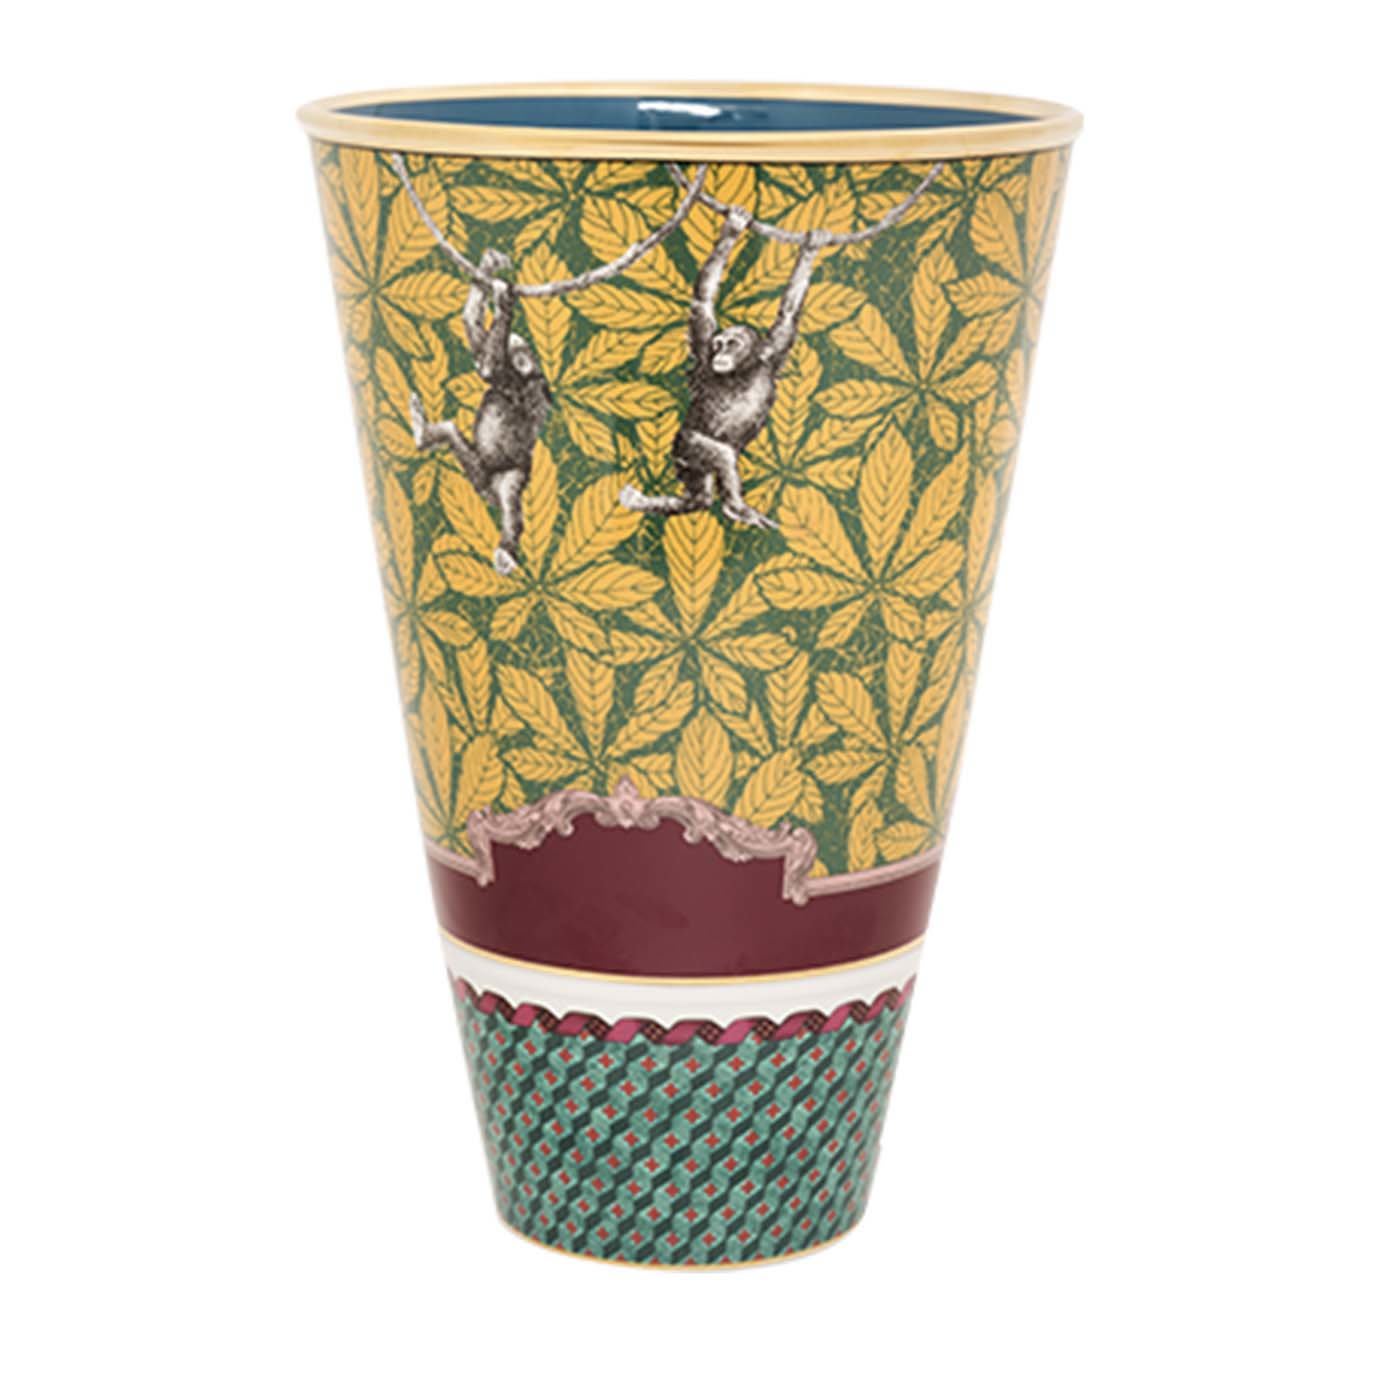 Totem Monkey Truncated Cone-Shaped Vase - GINORI 1735